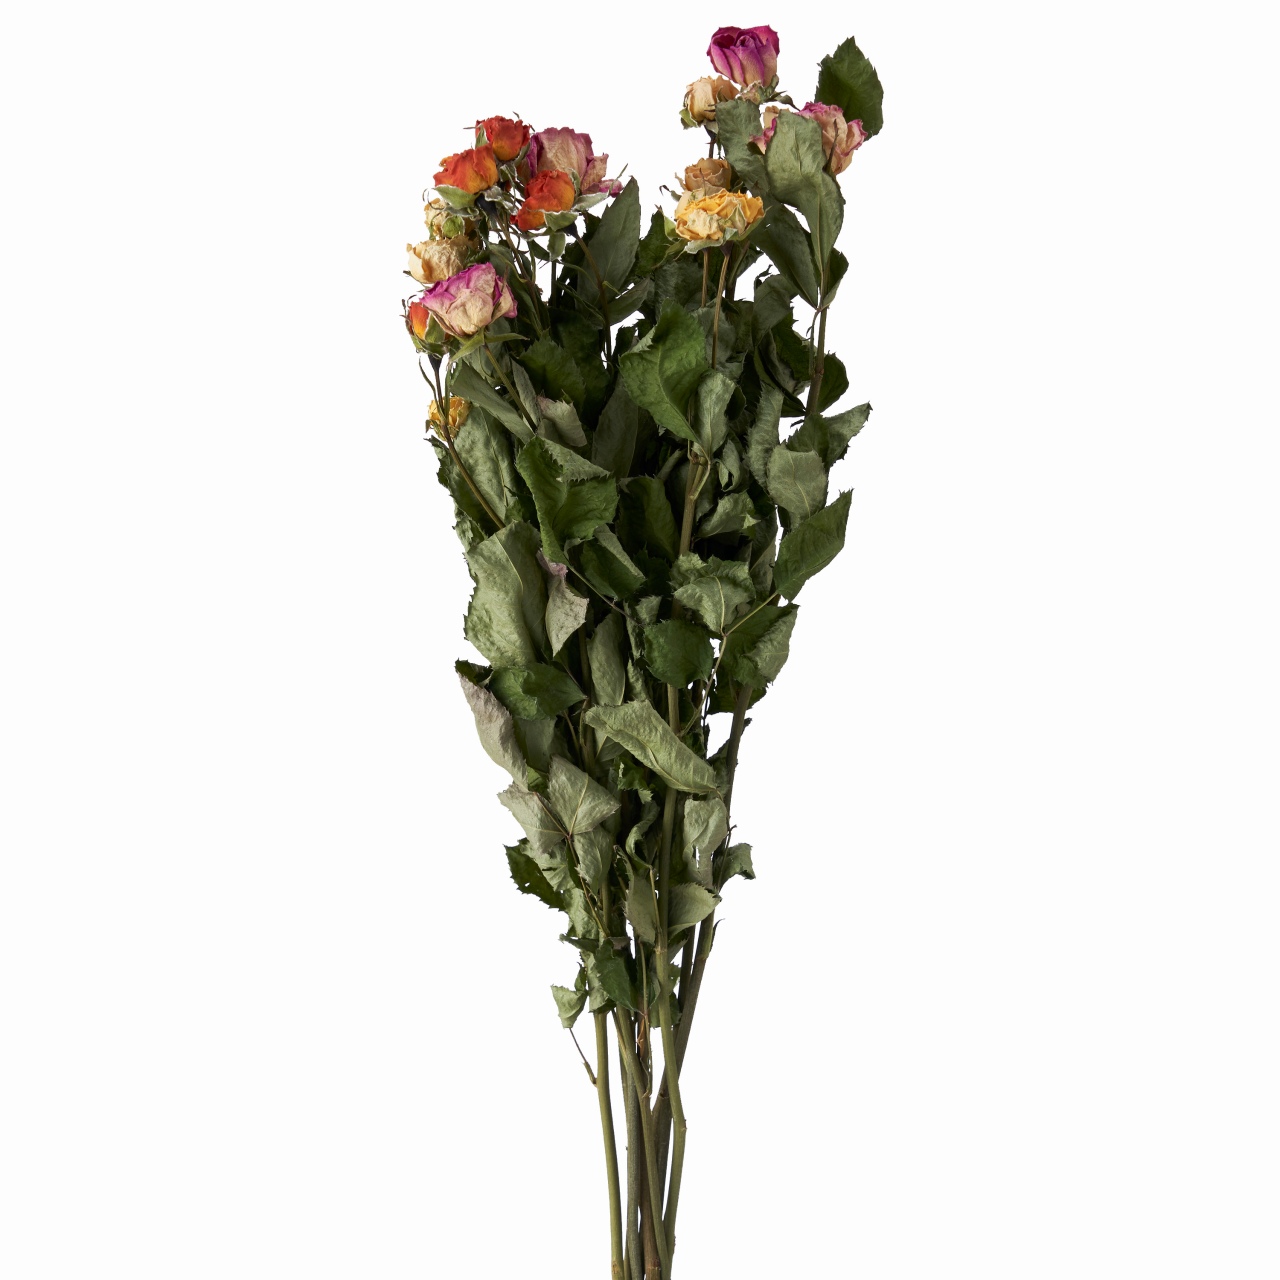 マイフラ 通販 風の花 スプレーバラ ミックス ドライフラワー ナチュラル Dn ドライフラワー ナチュラル素材 全国にmagiq 花器 花資材などをお届けします